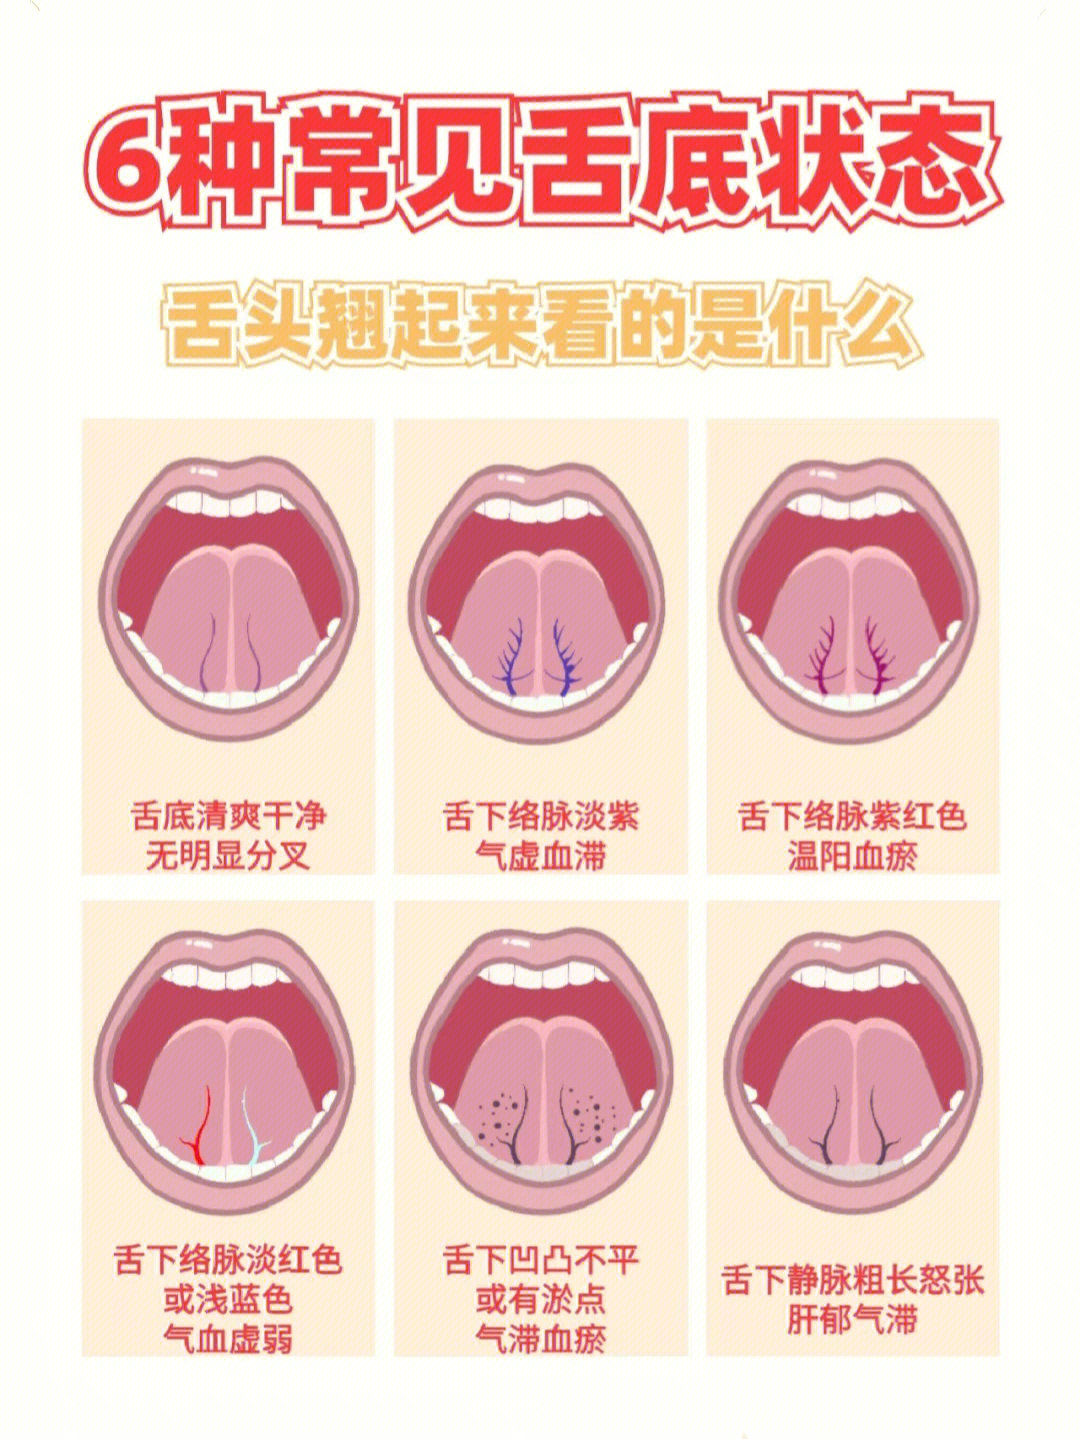 舌底结构图片